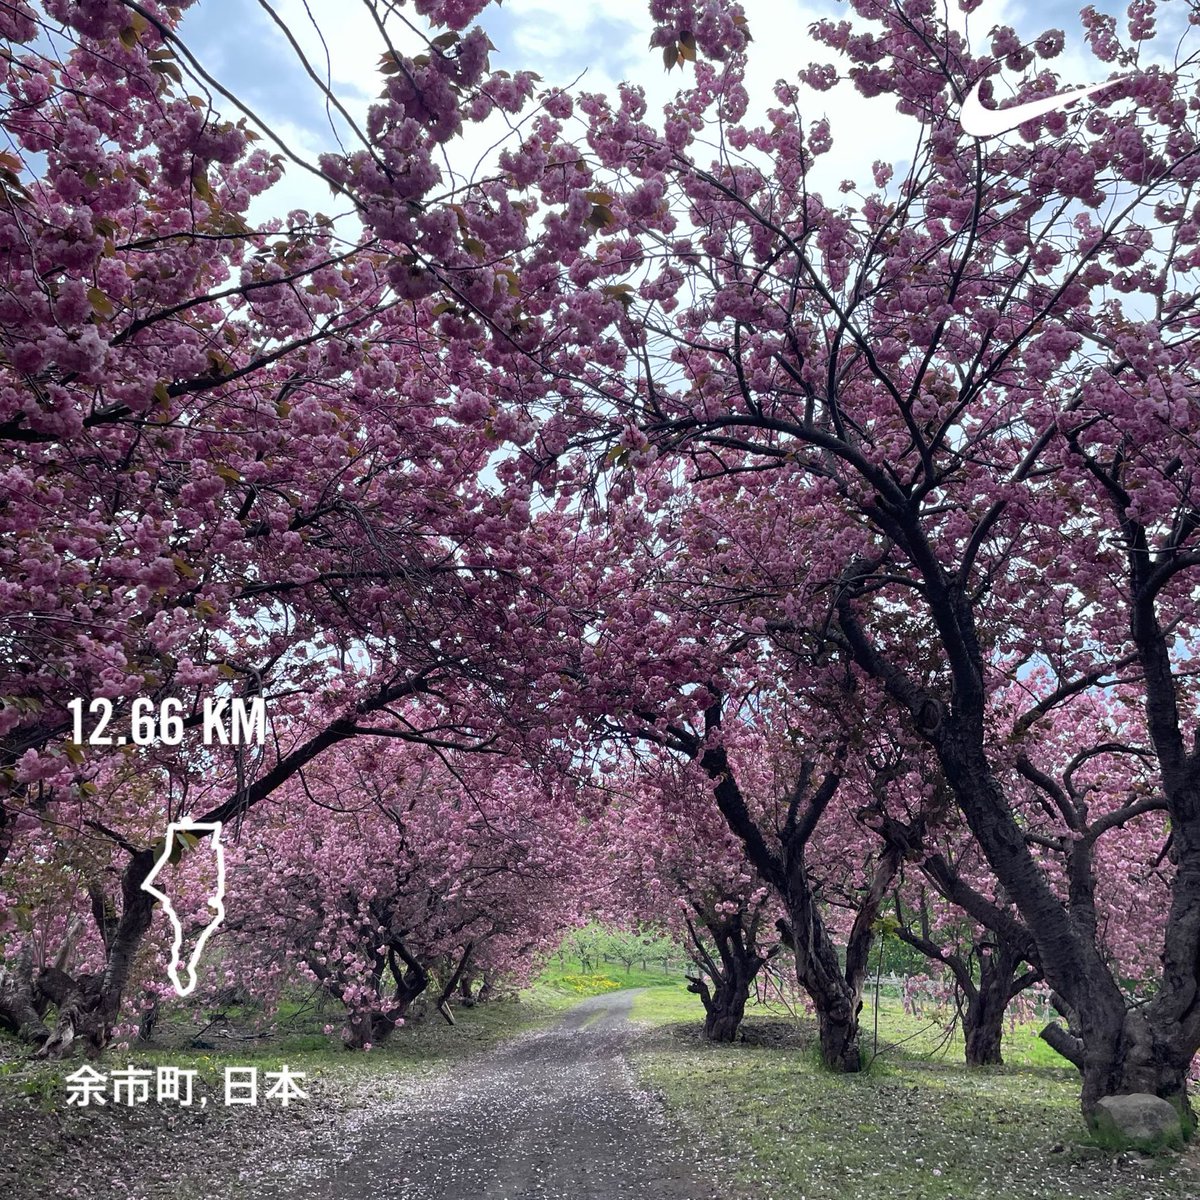 途中アクシデントありながらも、久々のワイナリーコース。んでいつもの八重桜が満開。
#MorningRuns #running #beautifulmorning #Hokkaido #朝ラン #ランニング #余市町 #北海道 #sundayjoy